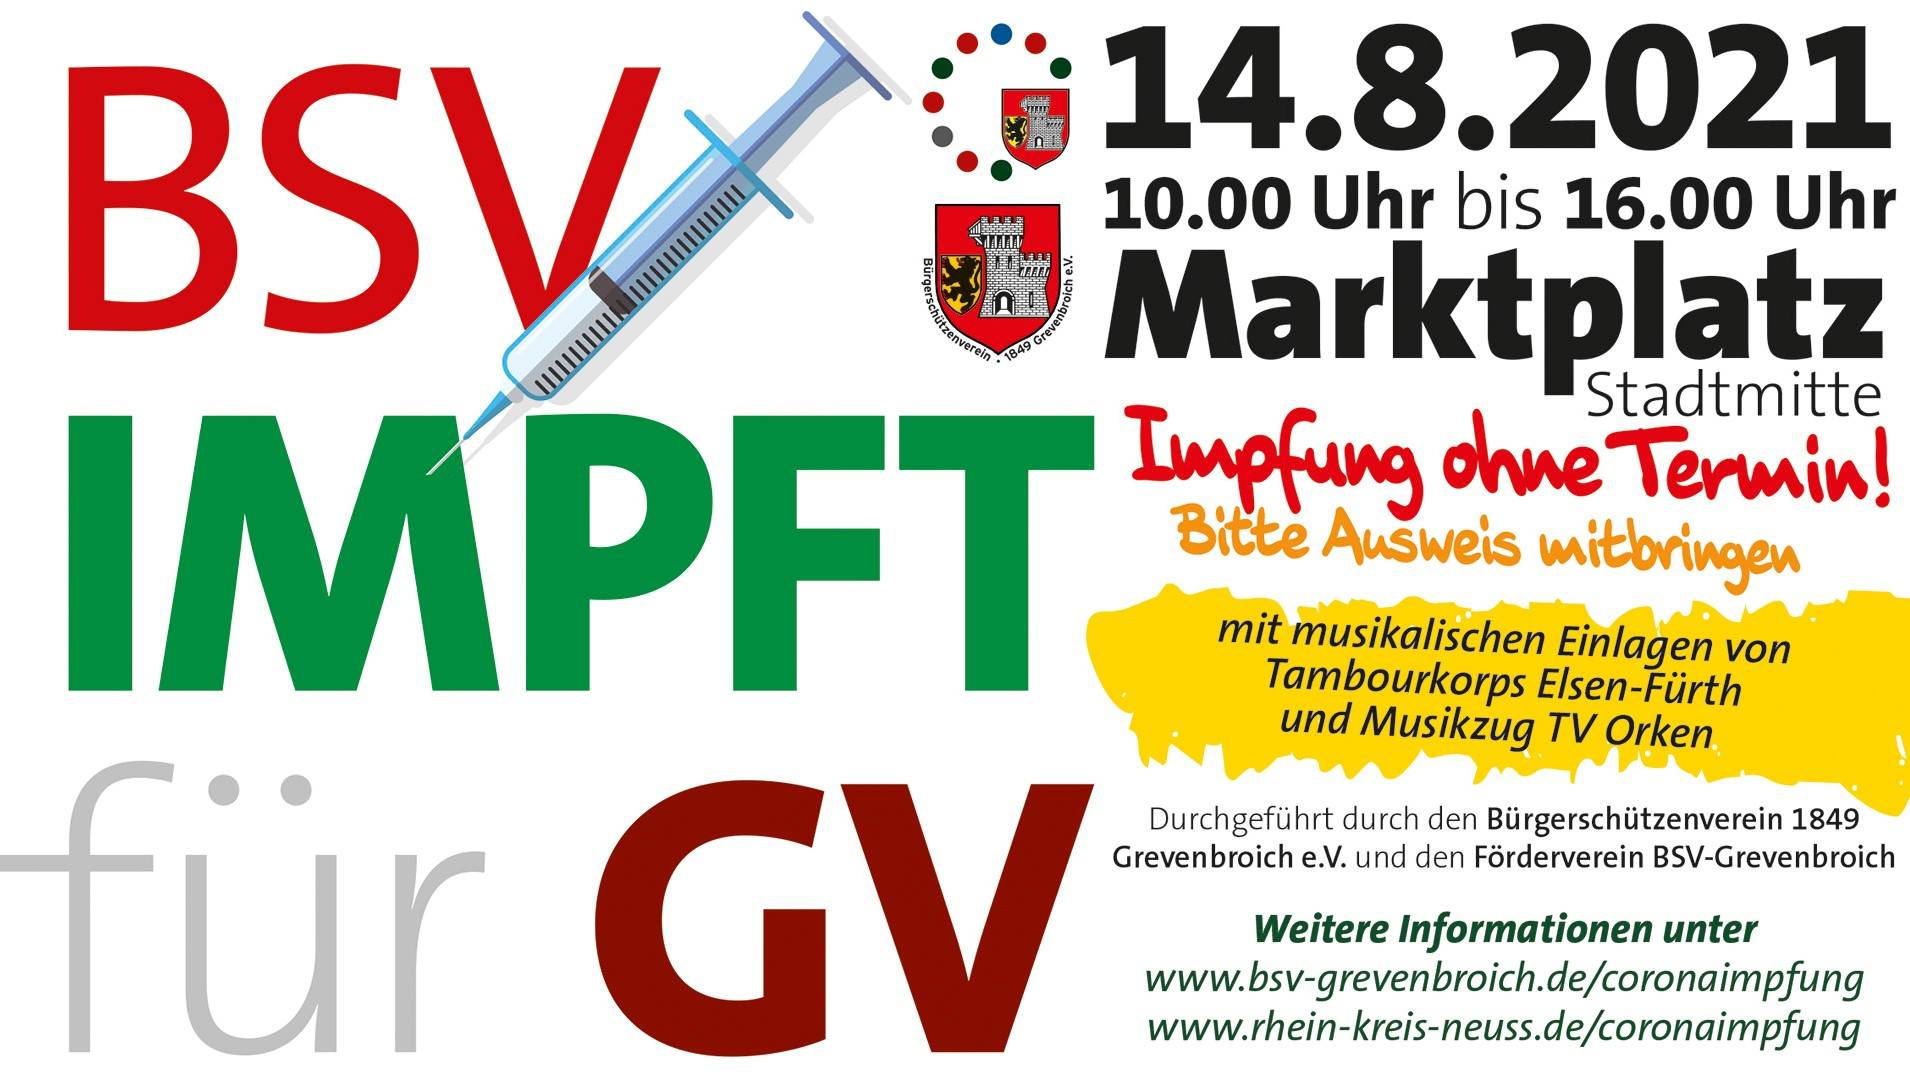 Mobiles Impfangebot auf dem Grevenbroicher Marktplatz